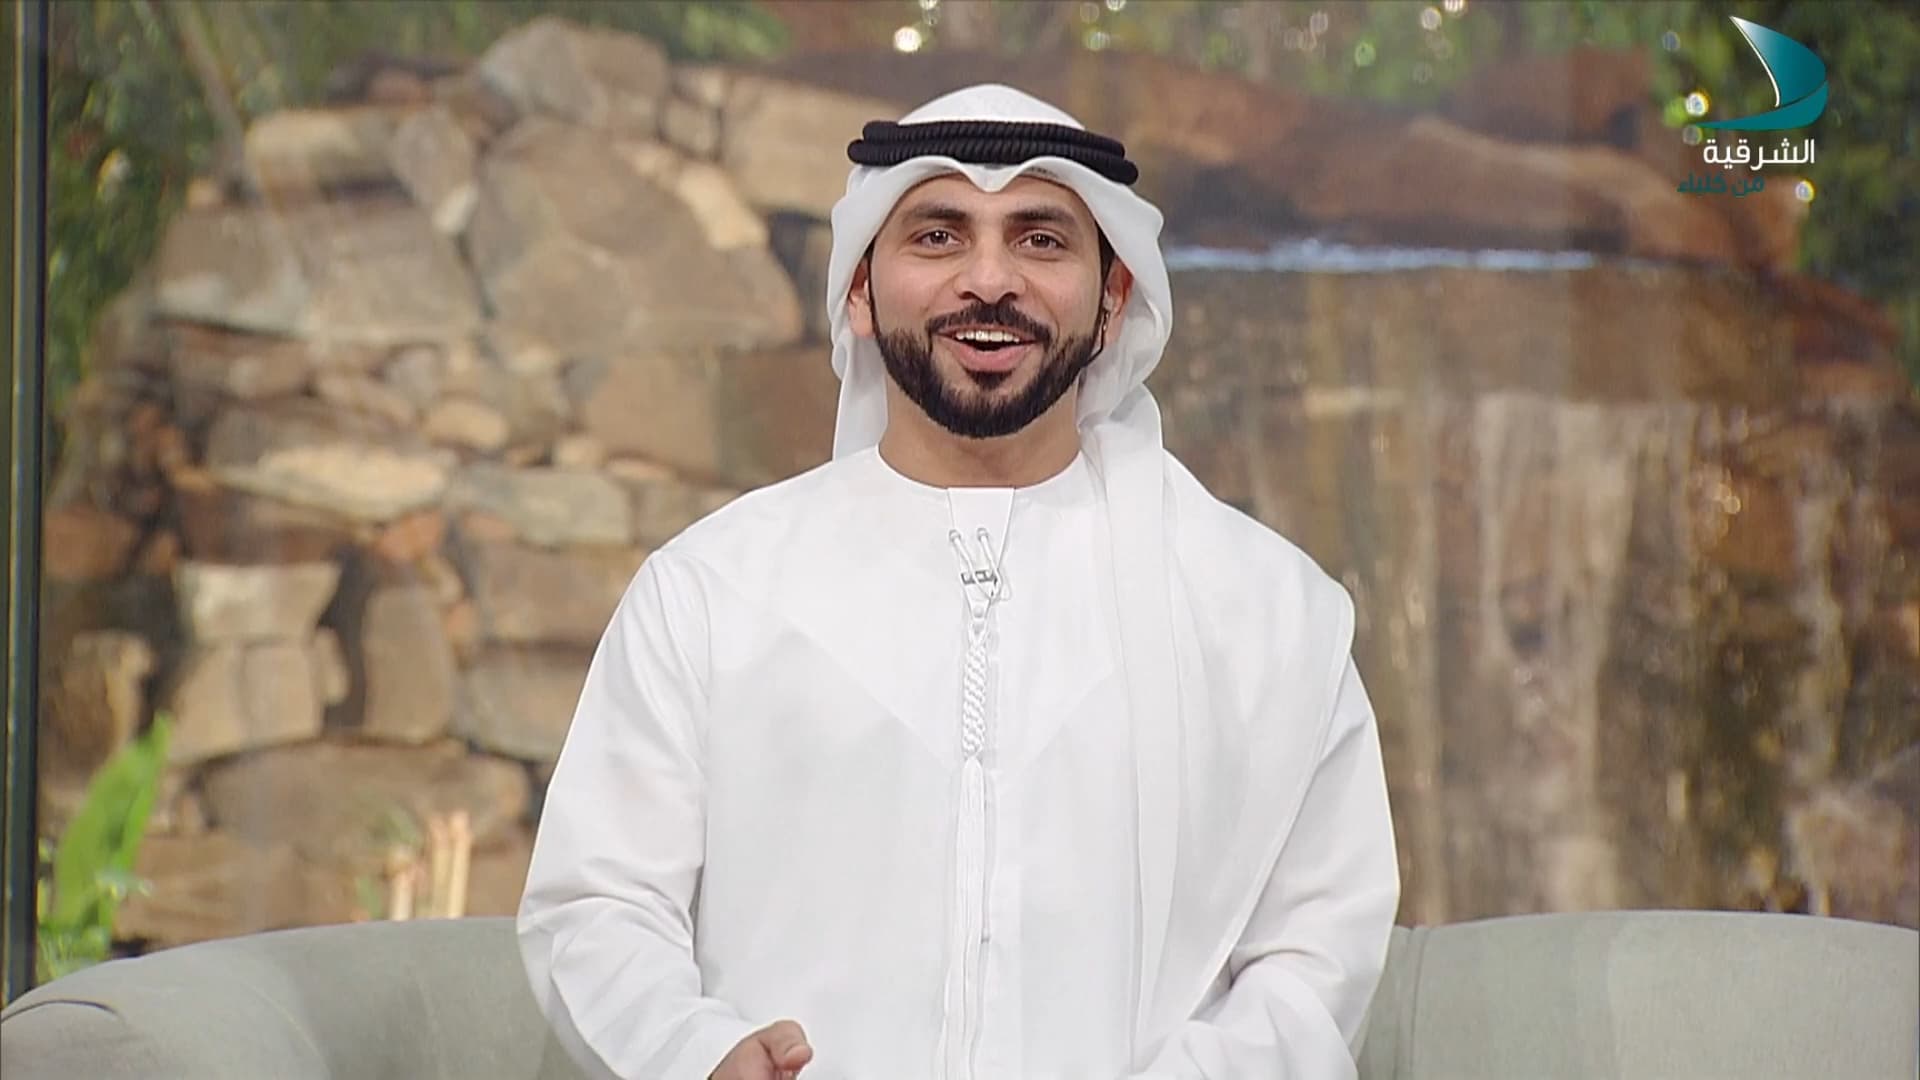 An image of the interviewer at Al Sharqiya Kalba TV.